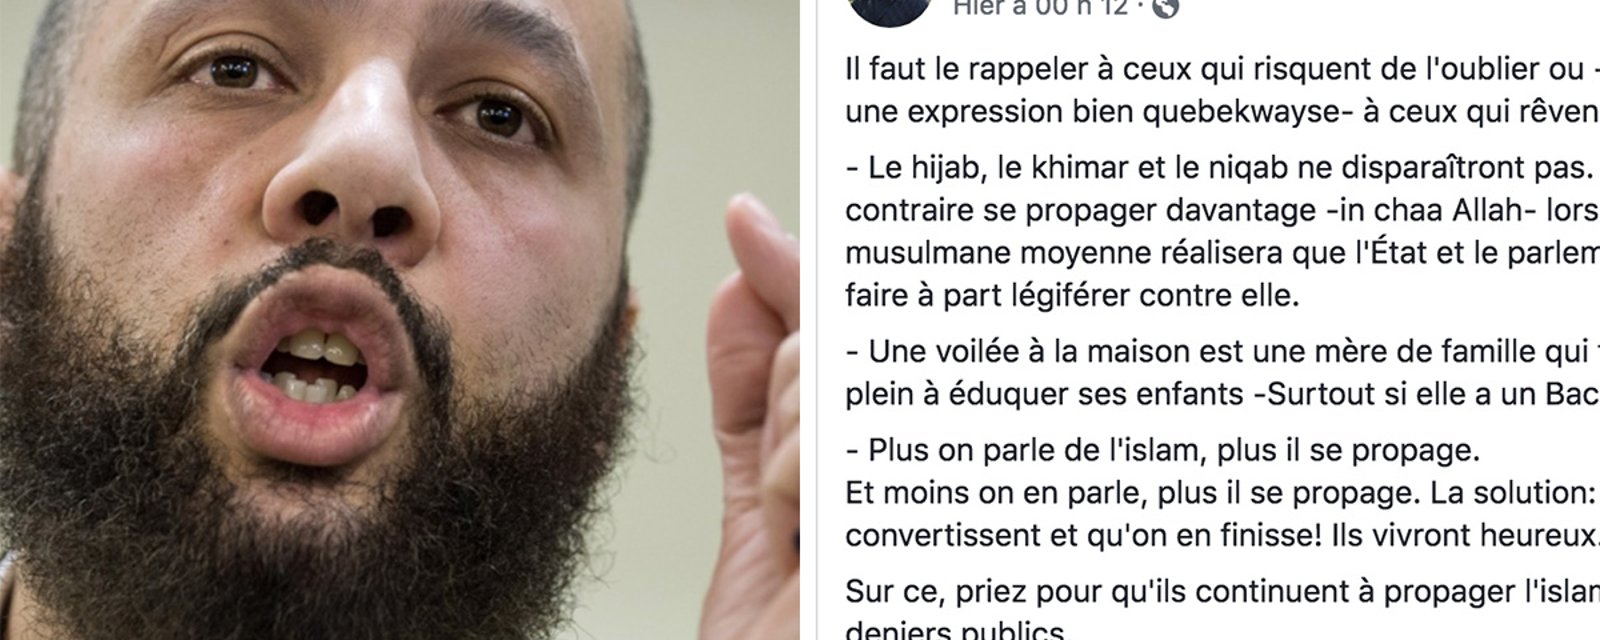 Voile islamique: un Imam montréalais sème la controverse avec un statut Facebook